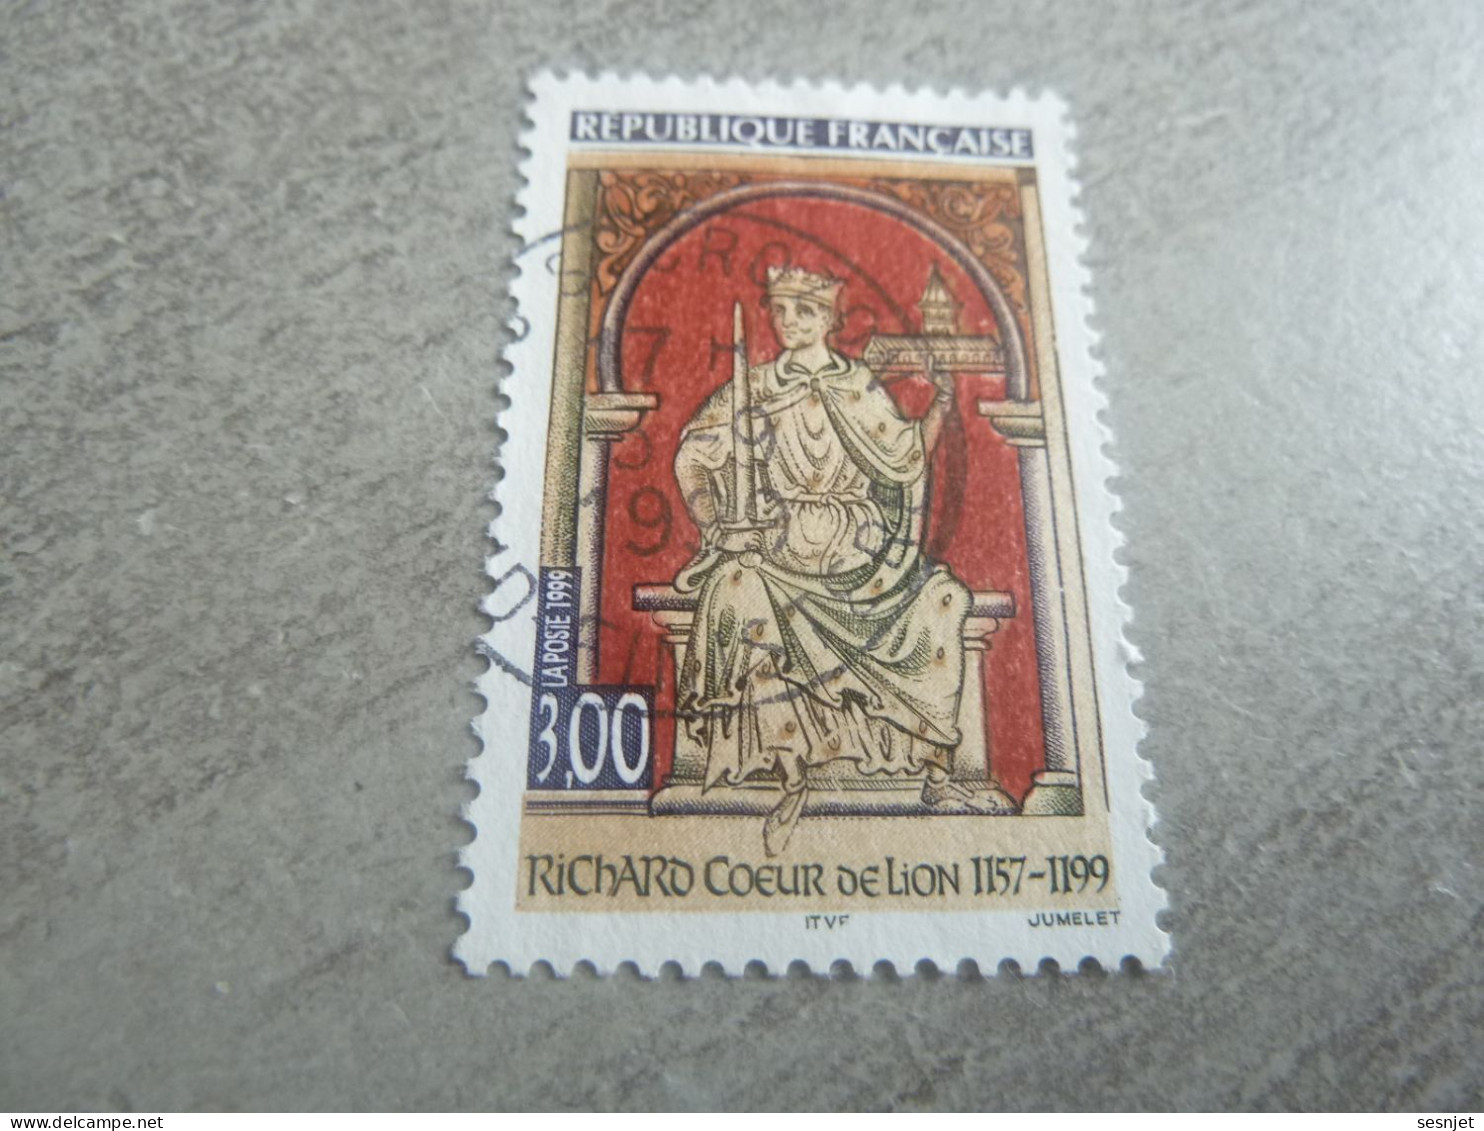 Richard Coeur De Lion (1157-1199) Roi - 3f. - Yt 3238 - Multicolore - Oblitéré - Année 1999 - - Gebruikt